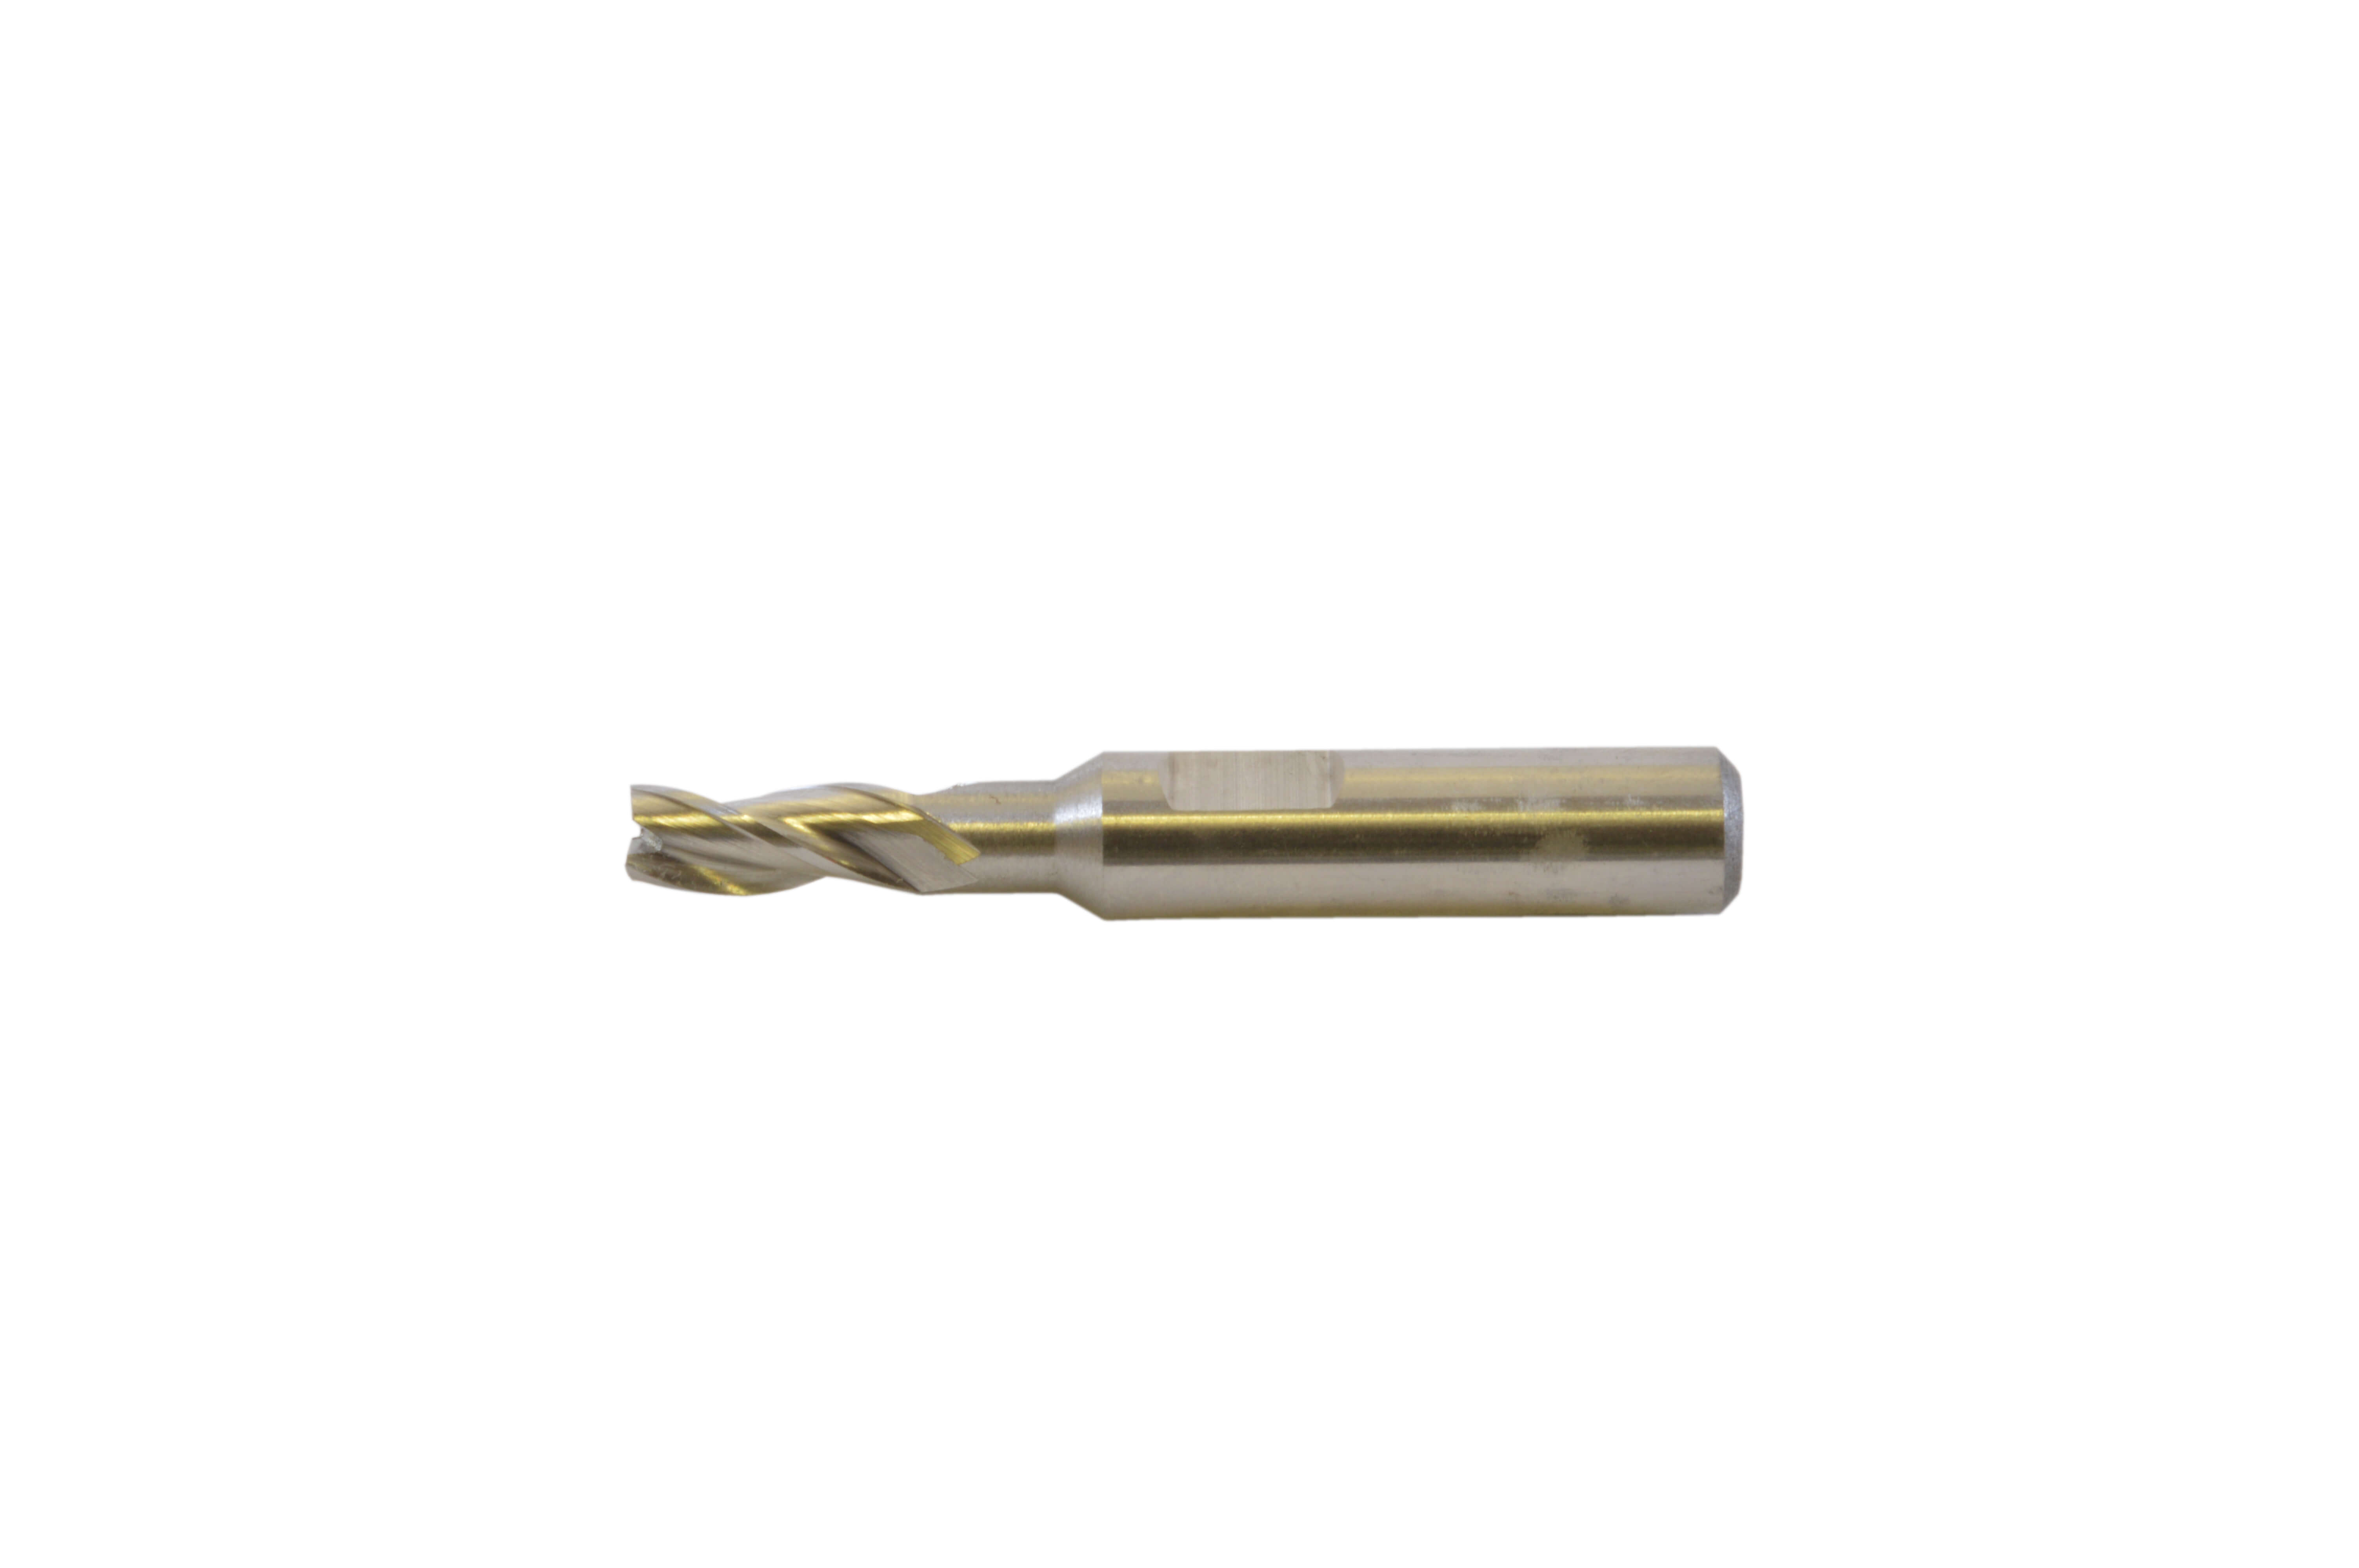 Borman HSS Small Milling Cutter - Long Series - 1.5mm